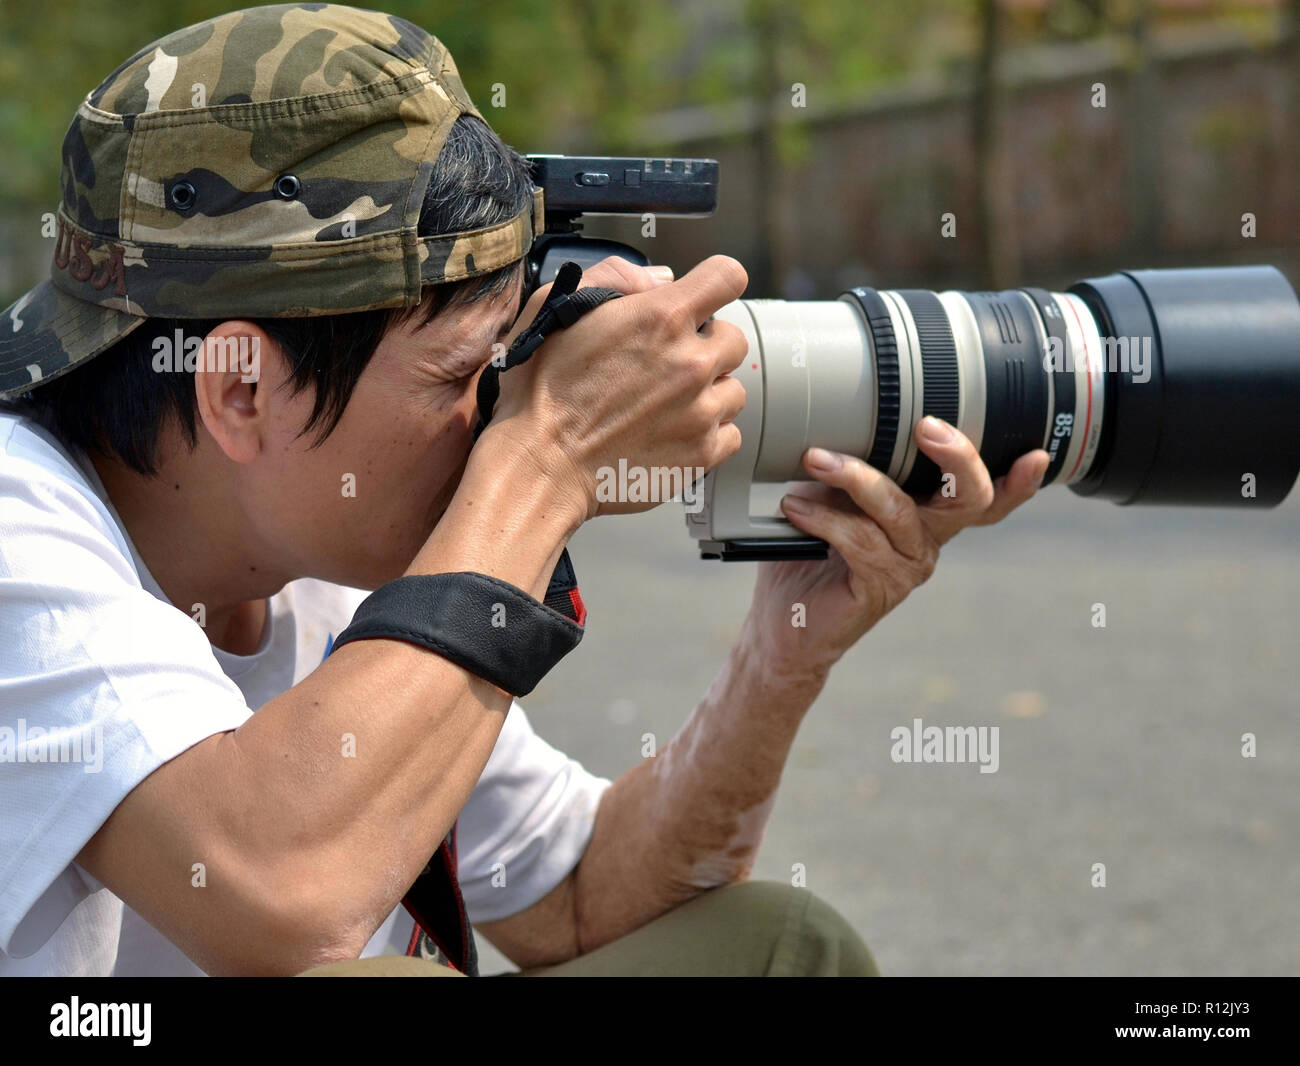 Photographe professionnelle vietnamienne prend une photo avec son Canon EOS 6D appareil photo reflex numérique. Banque D'Images